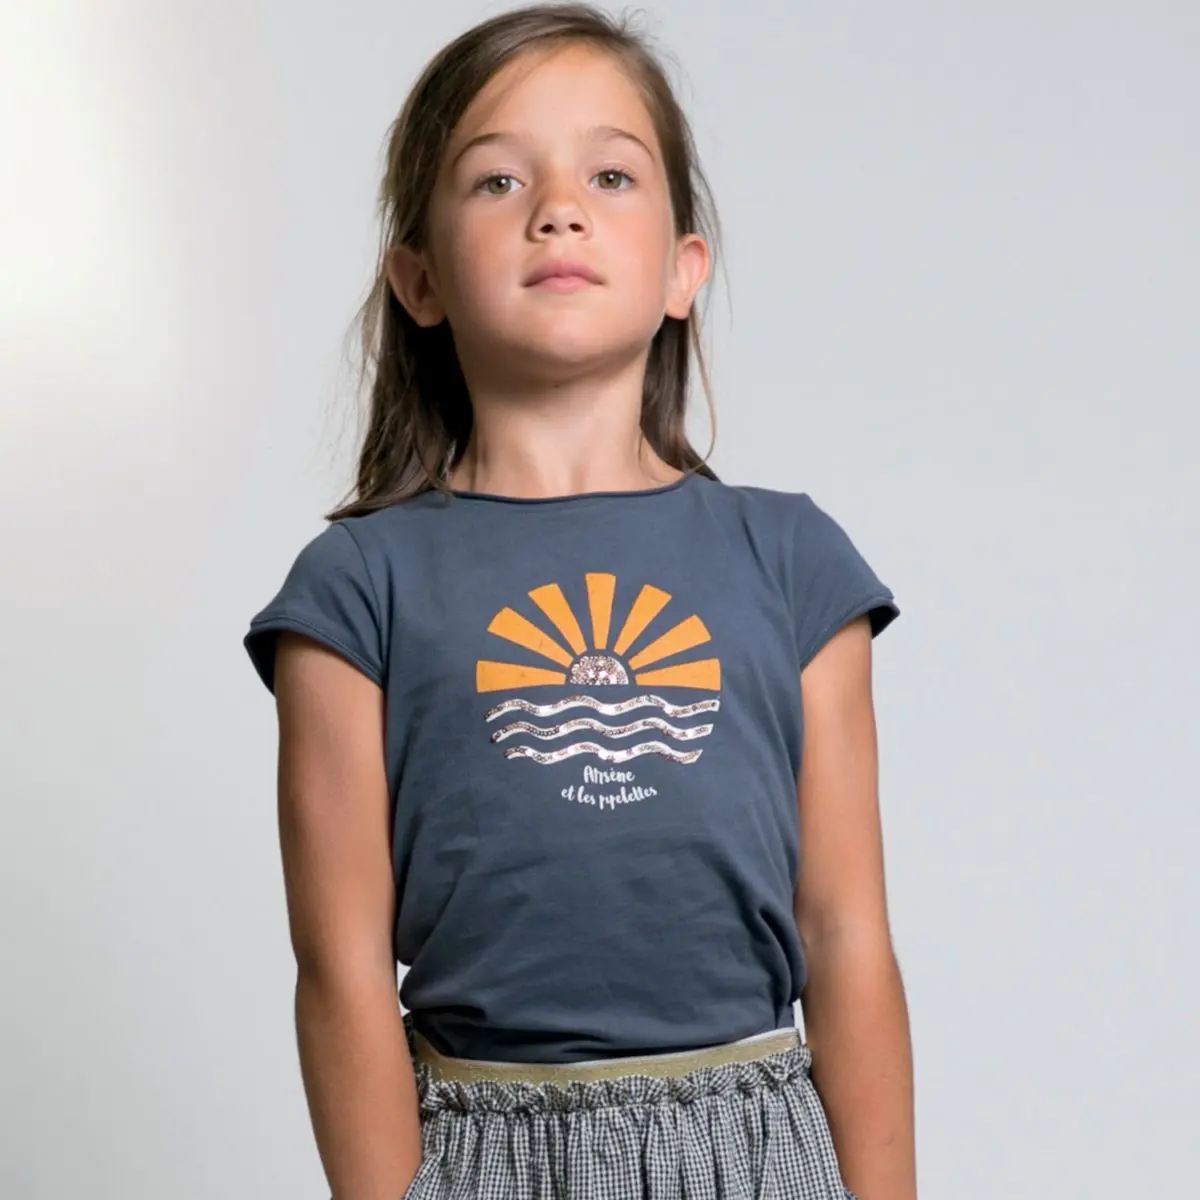 T-Shirt Stacy, aufgehende Sonne mit Pailletten, anthrazit